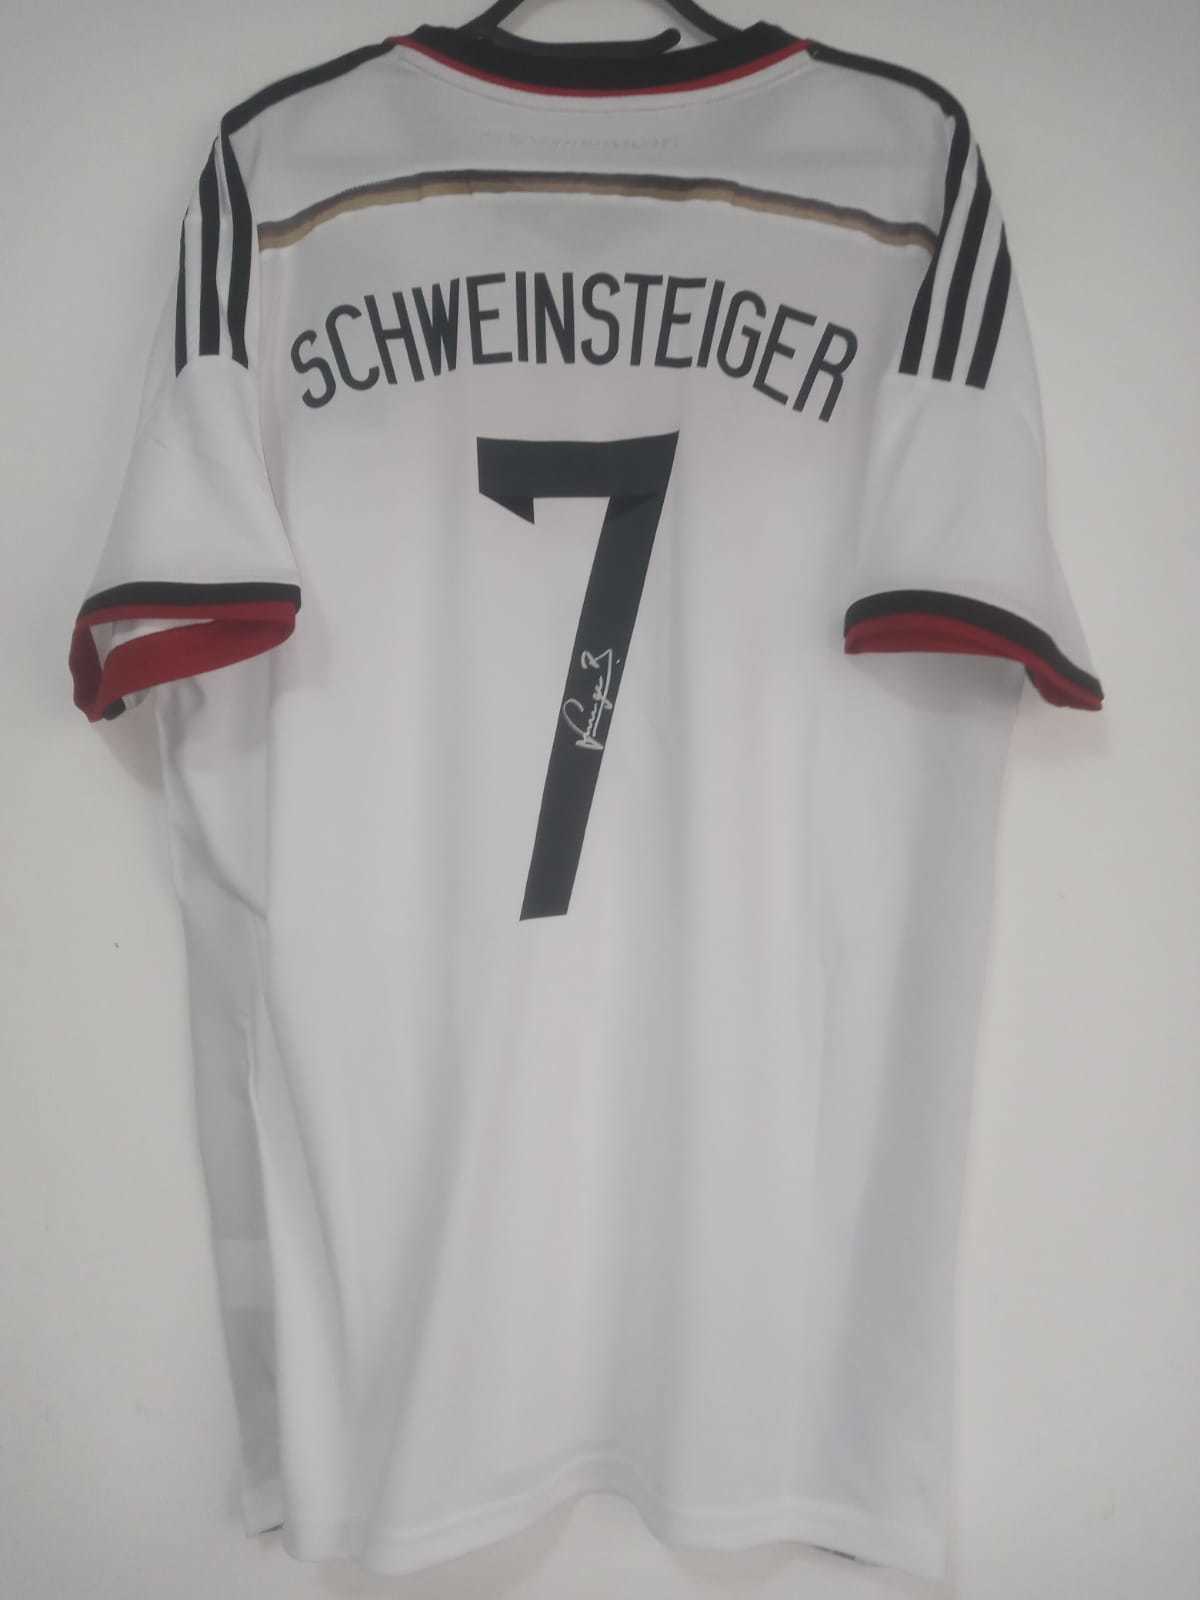 Jersey / Shirt Germany Winner World Cup 2014 #7 Schweinsteiger Autographed  - $1,000.00